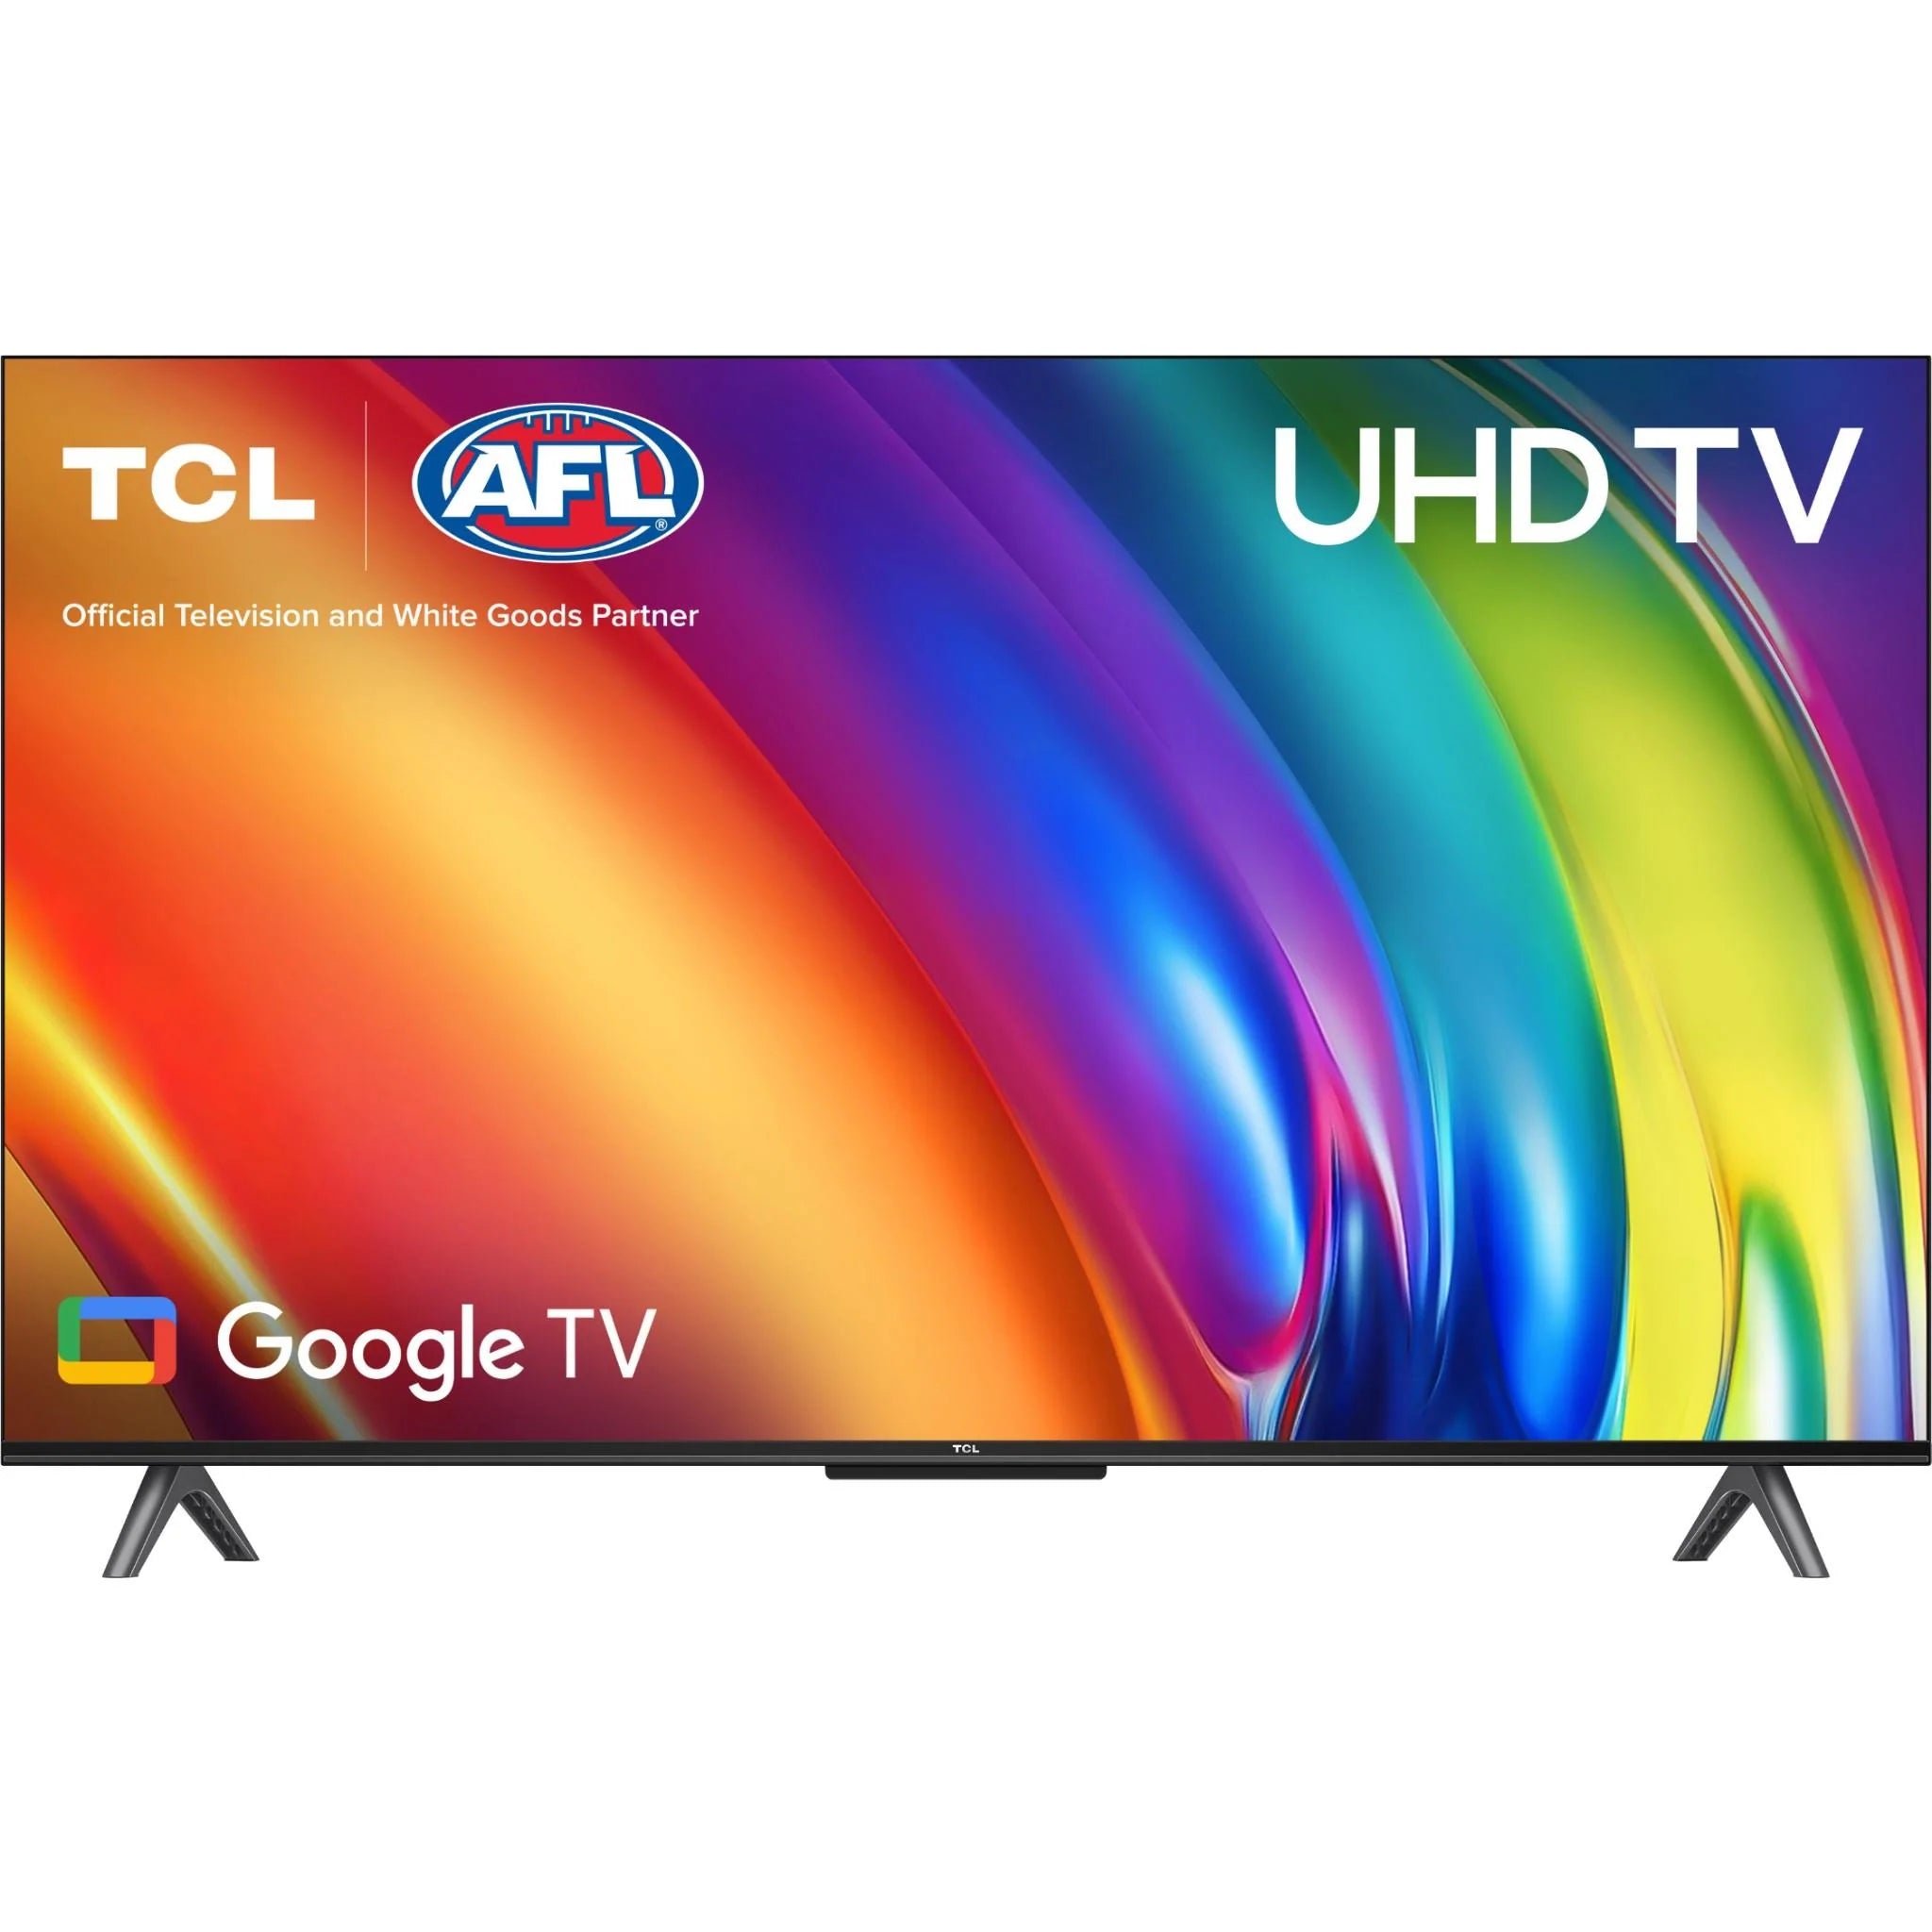 TCL 43" 4K Ultra HD LED Google TV